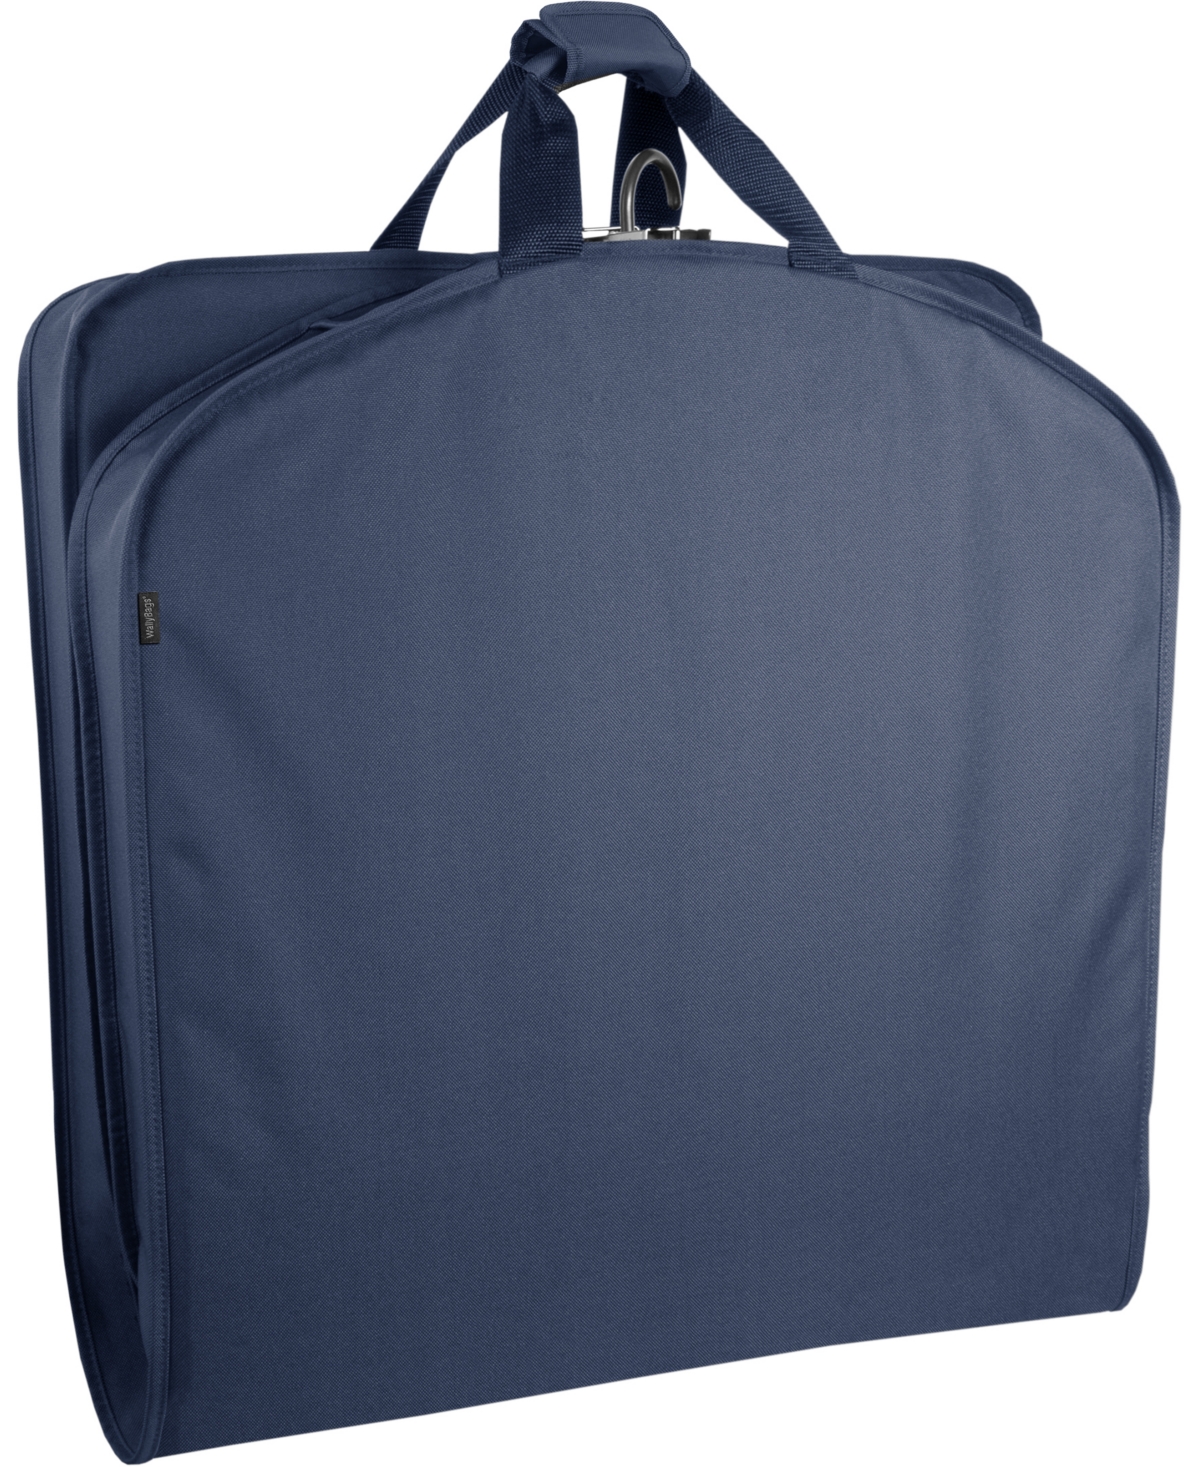 60" Deluxe Travel Garment Bag - Black